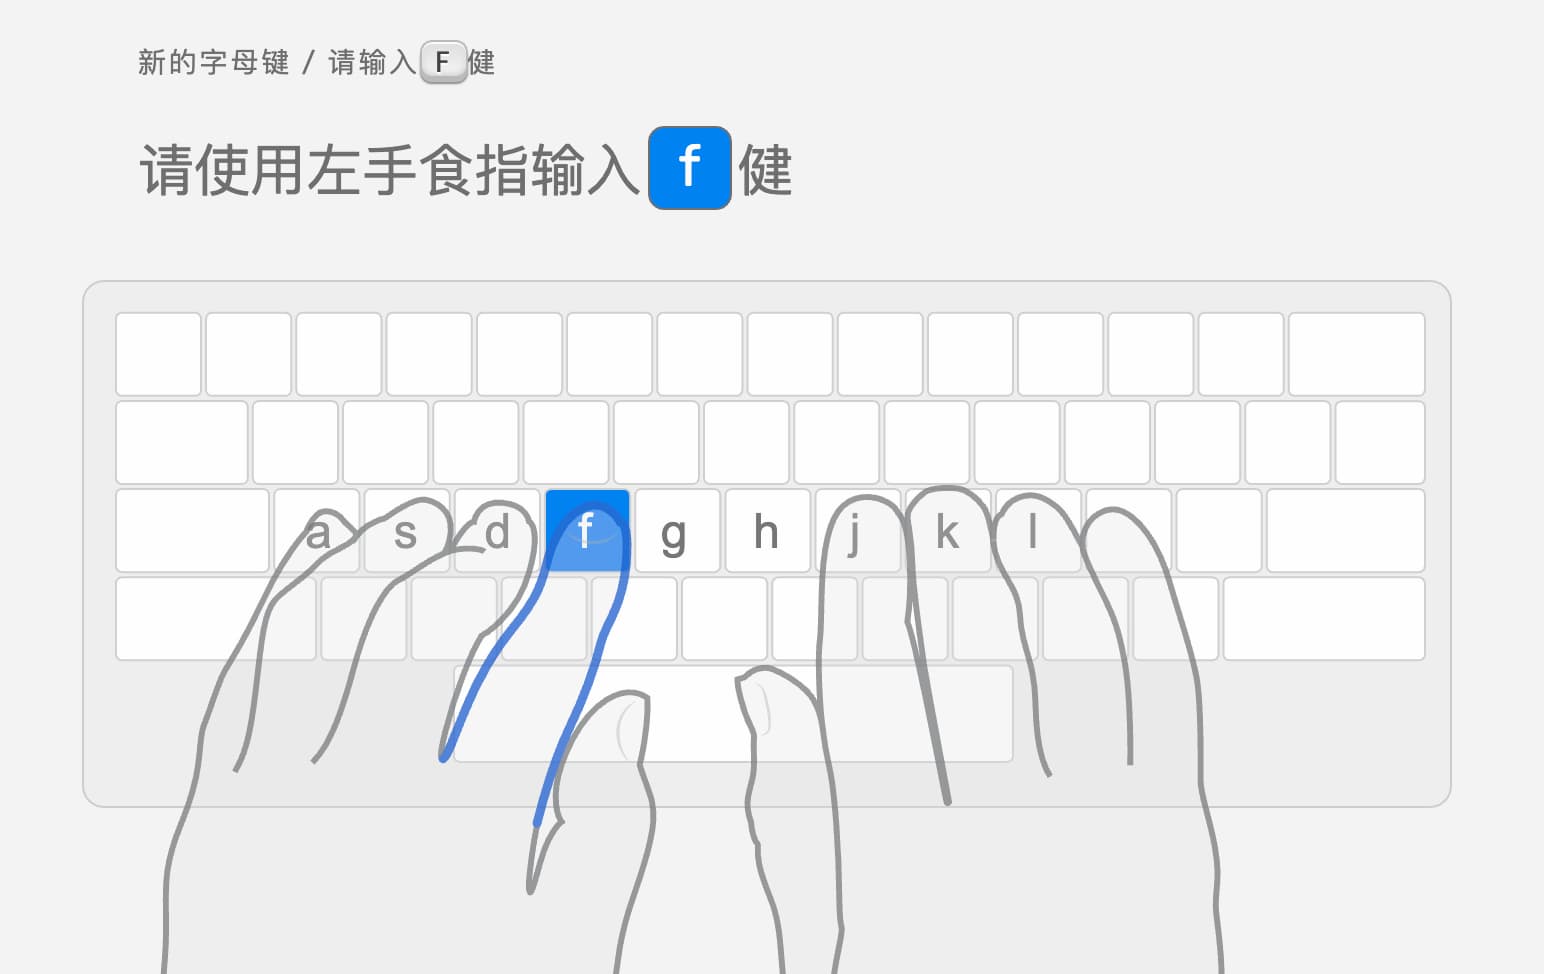 指法输入中文打字俱乐部（TypingClub）- 从 0 开始练习打字，支持多键盘布局、多语种、拼音，以及单手输入、旁白等 1